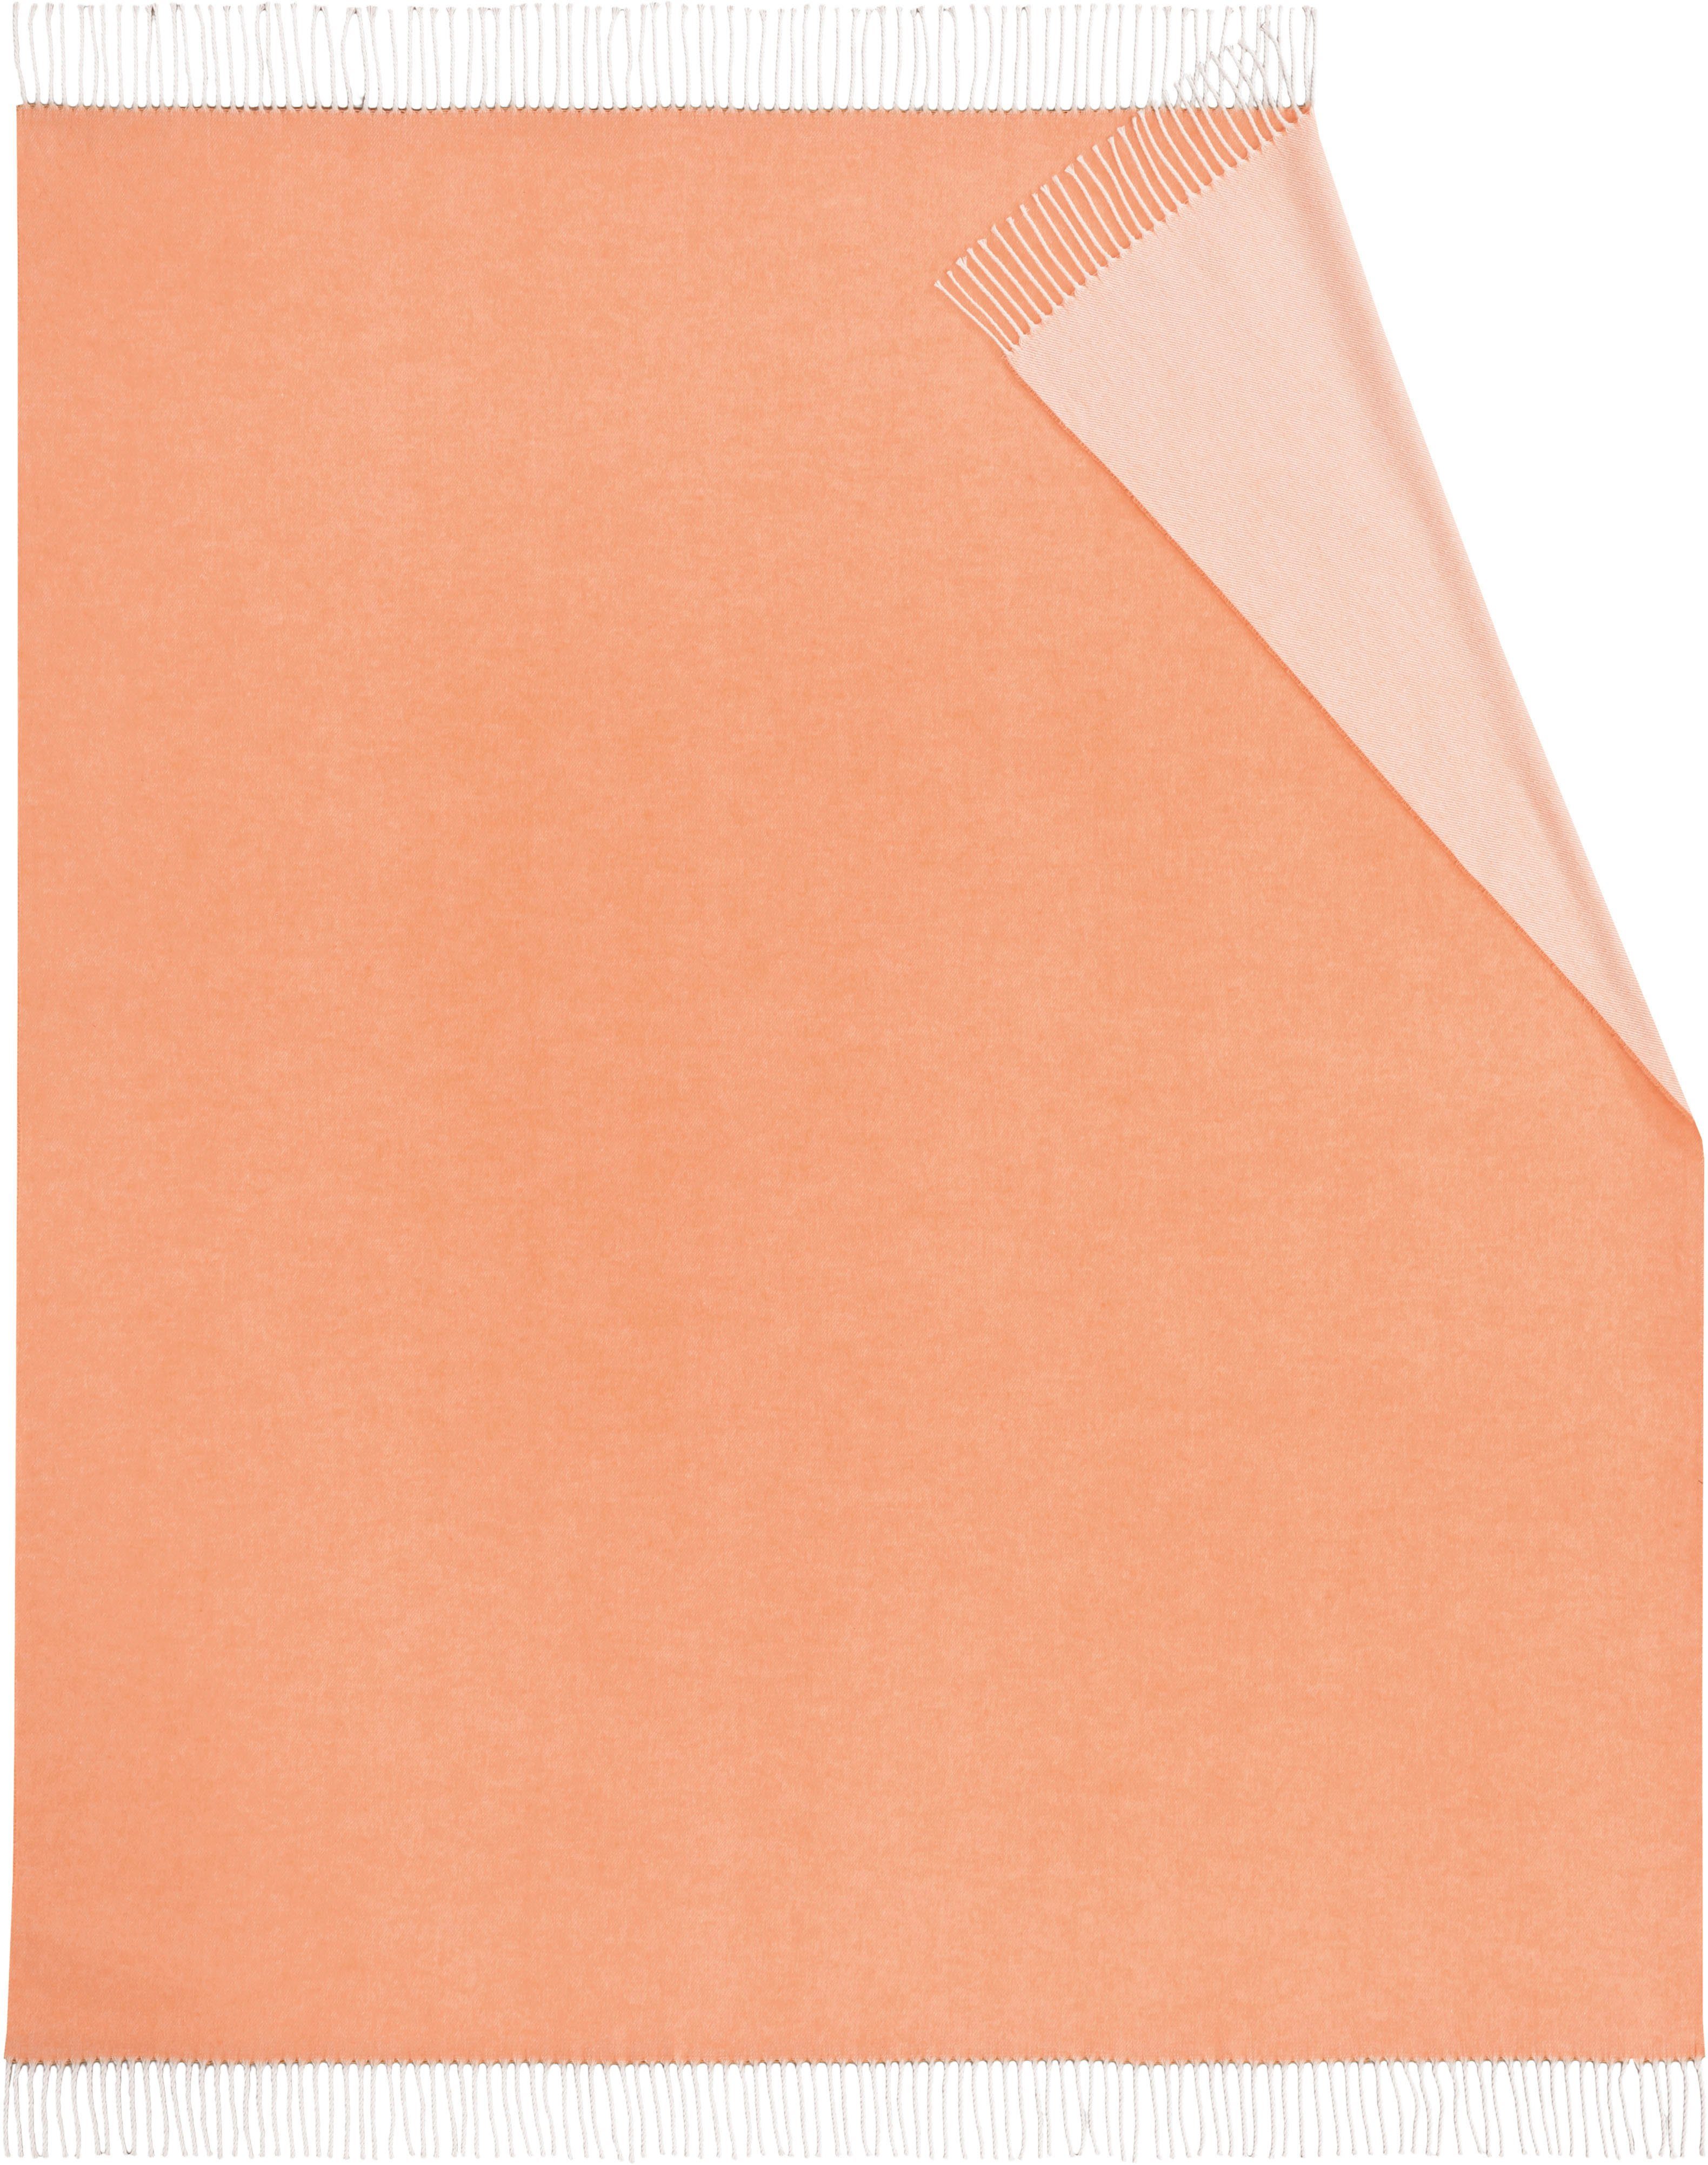 Plaid Twill, Biederlack, mit Uni-Farben, orange frischen Kuscheldecke